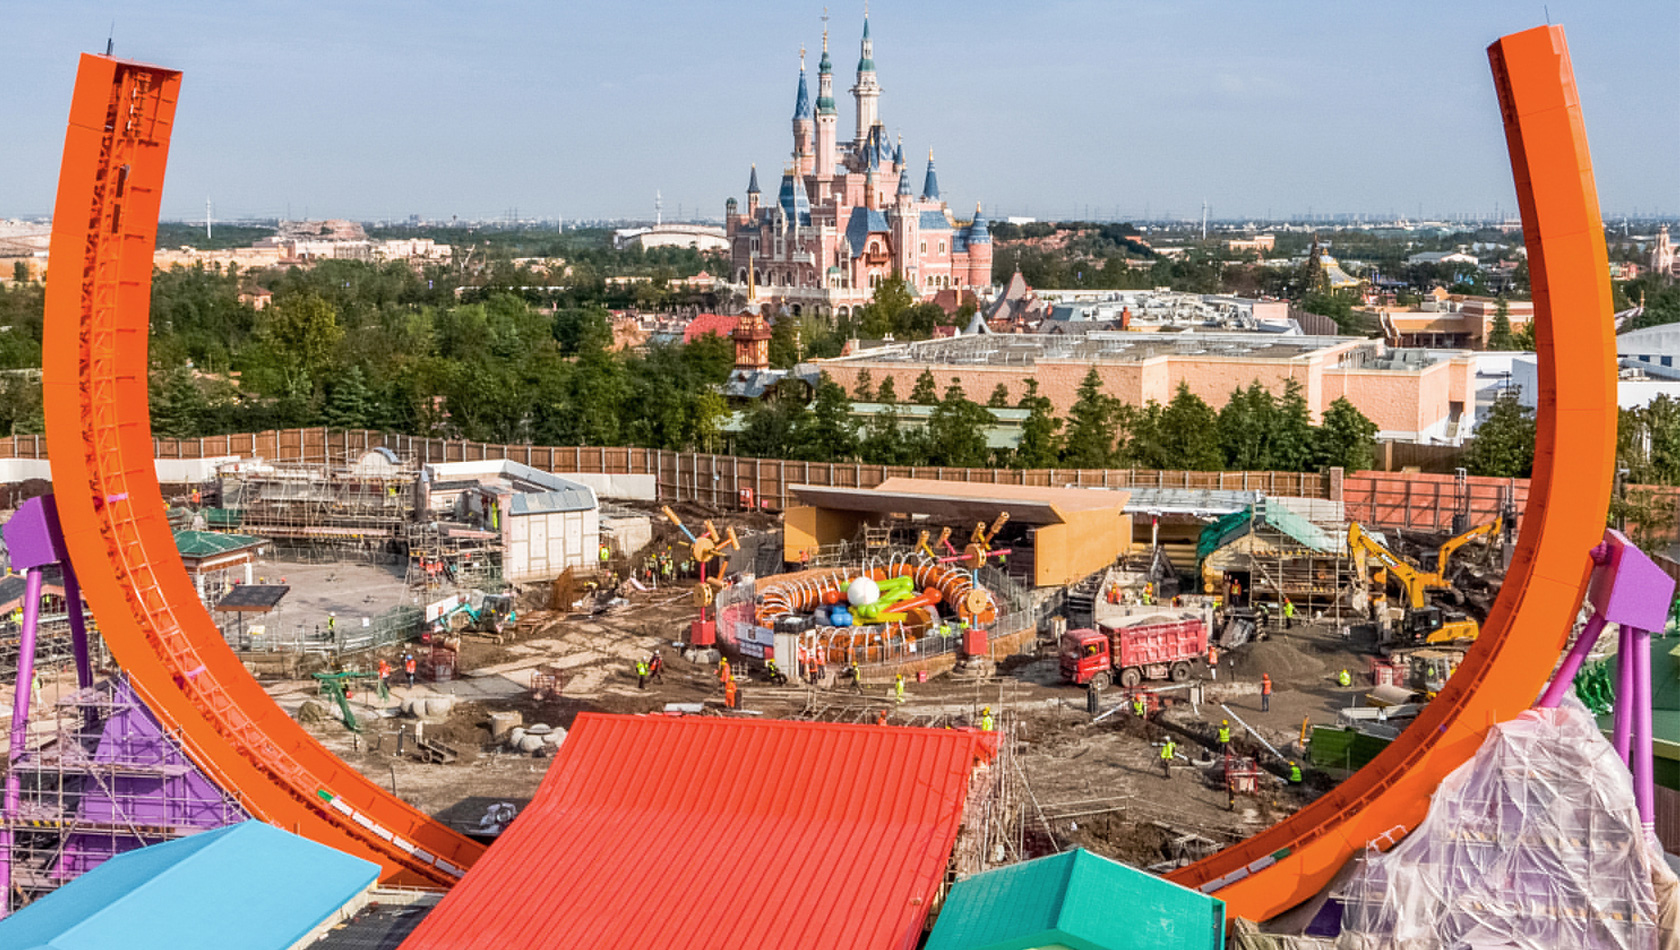 Bau des neuen Themenbereich Toy Story Land in Disneyland Shanghai